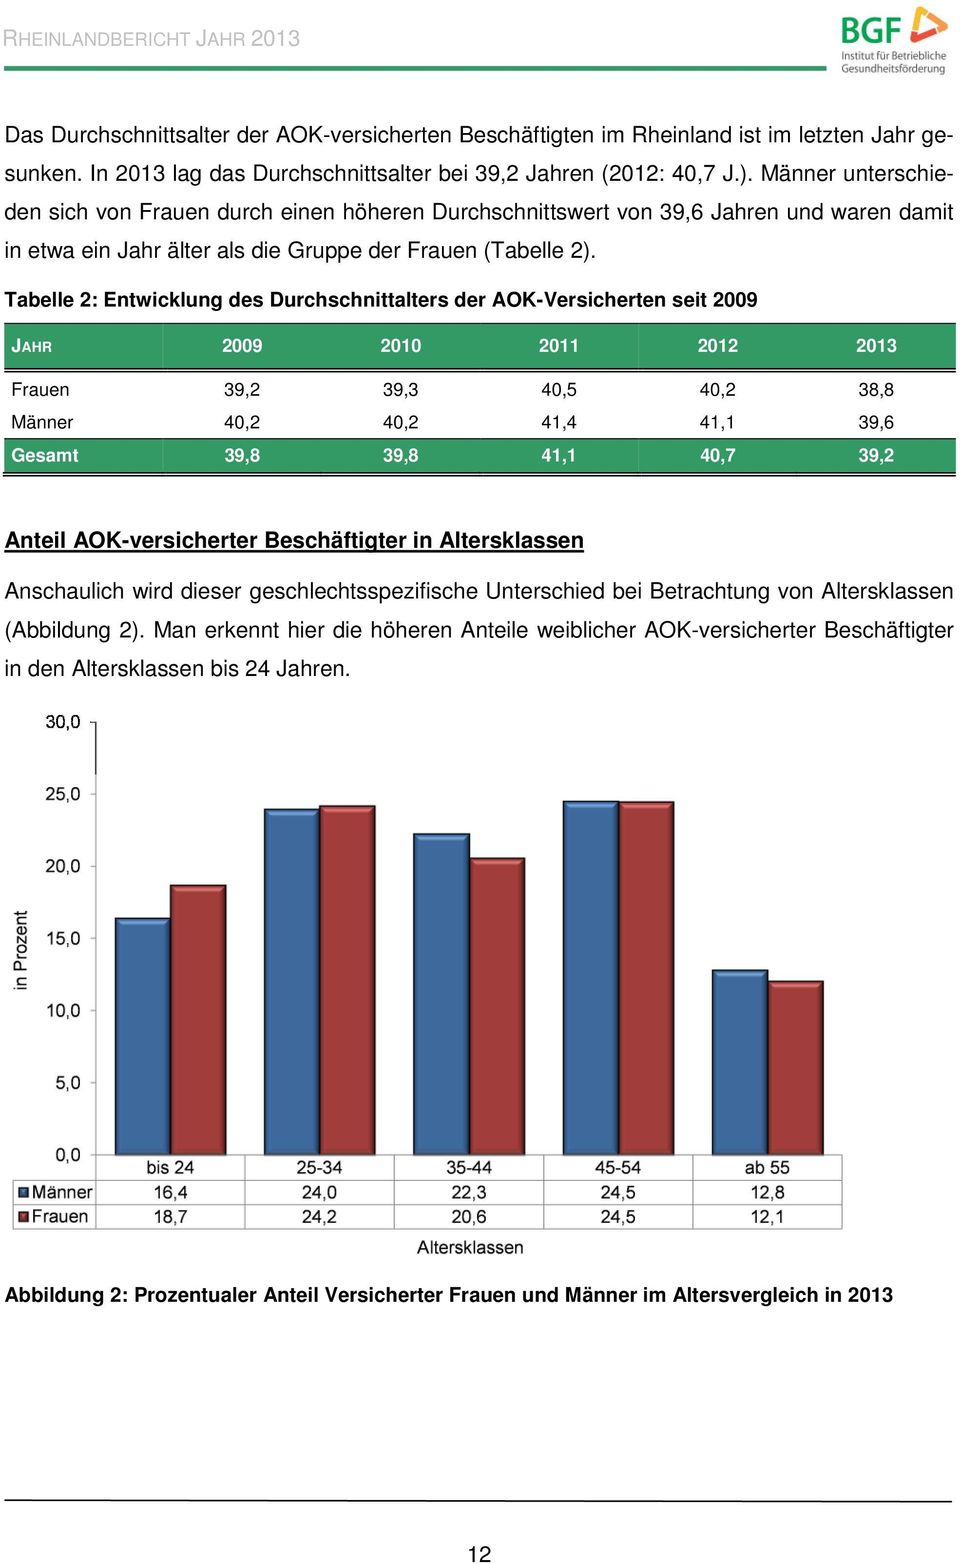 Tabelle 2: Entwicklung des Durchschnittalters der AOK-Versicherten seit 2009 JAHR 2009 2010 2011 2012 2013 Frauen 39,2 39,3 40,5 40,2 38,8 Männer 40,2 40,2 41,4 41,1 39,6 Gesamt 39,8 39,8 41,1 40,7